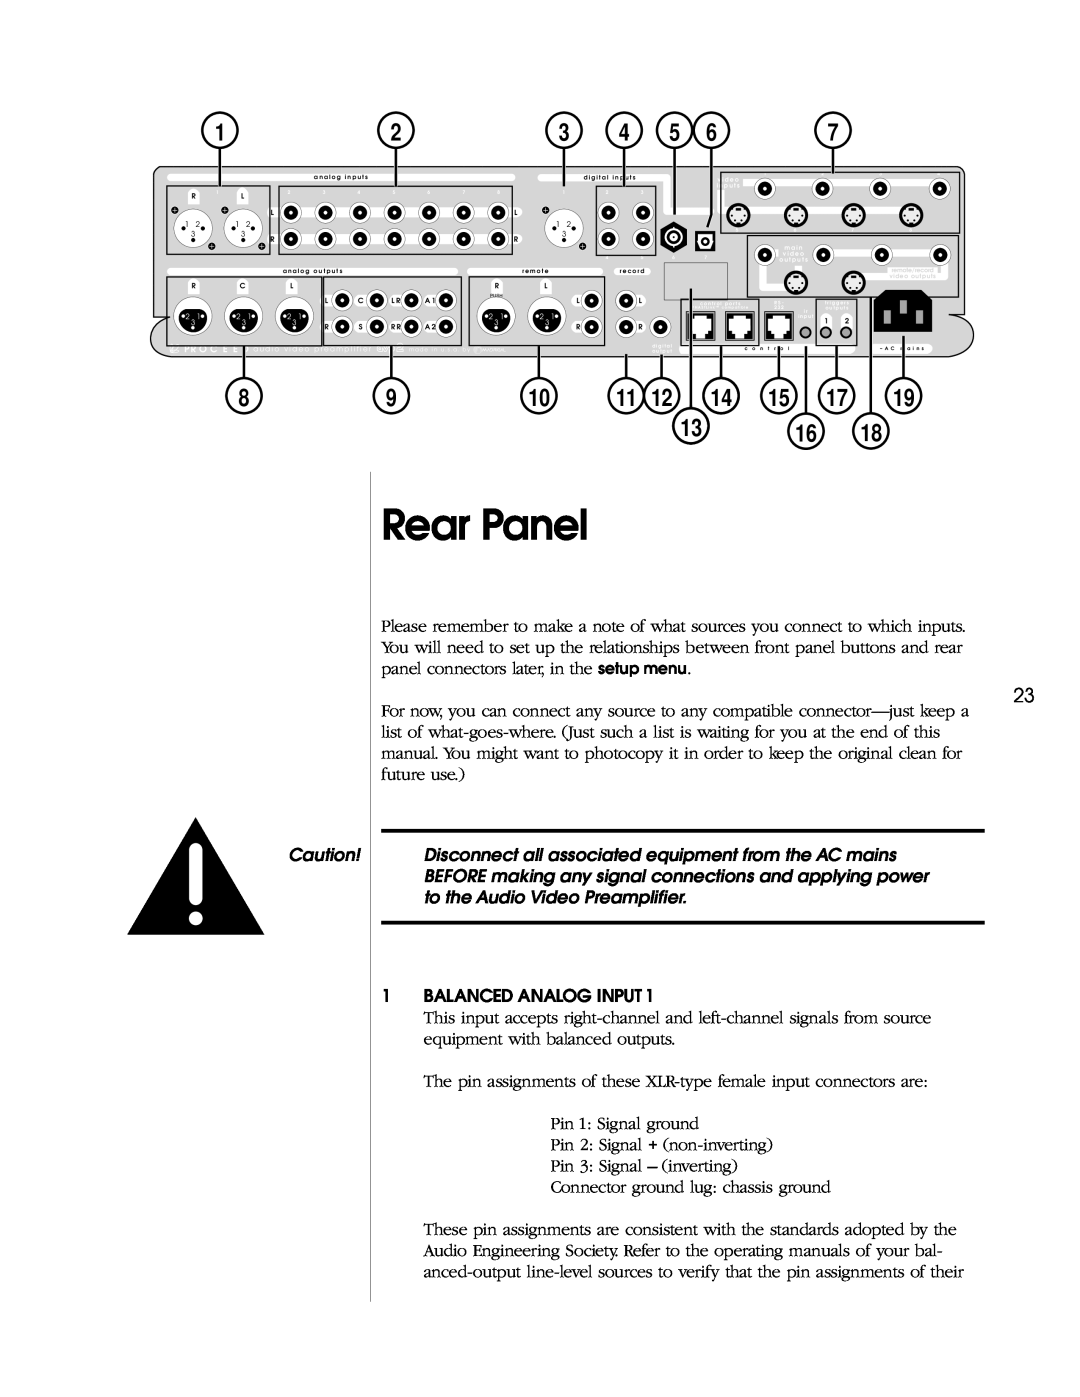 Madrigal Imaging AVP2 owner manual Rear Panel, Balanced Analog Input 